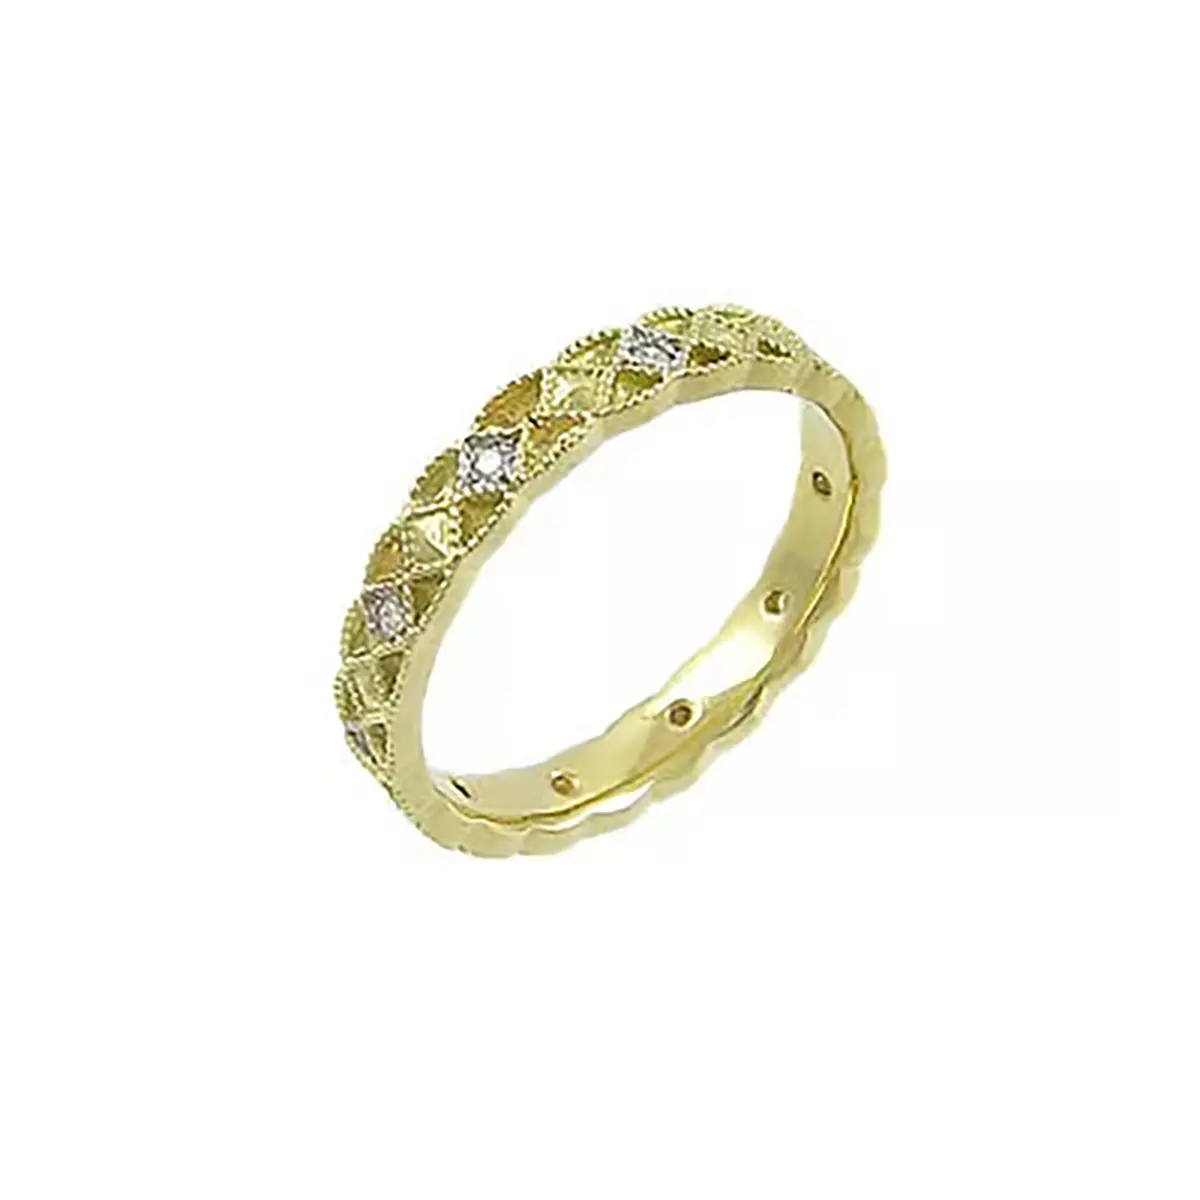 Iconic 14k Gold Celtic Wedding Ring...